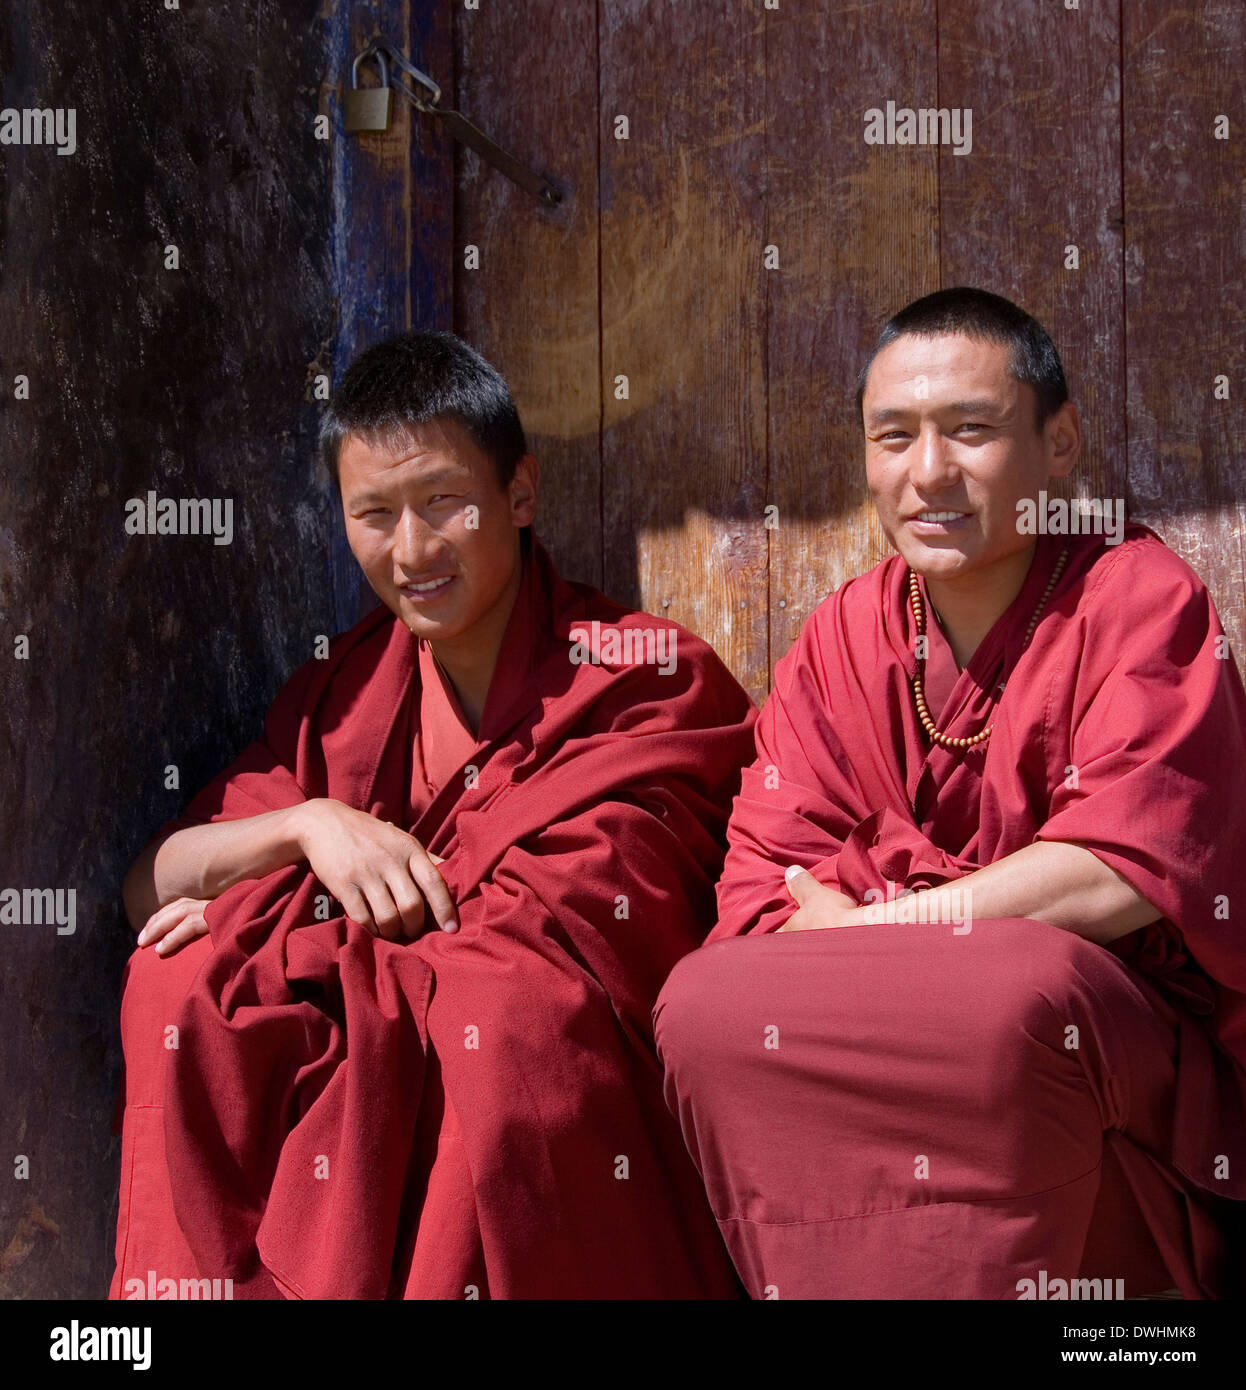 Les moines bouddhistes au monastère de Ganden, élevé dans l'Himalaya dans la région autonome du Tibet en Chine. Banque D'Images